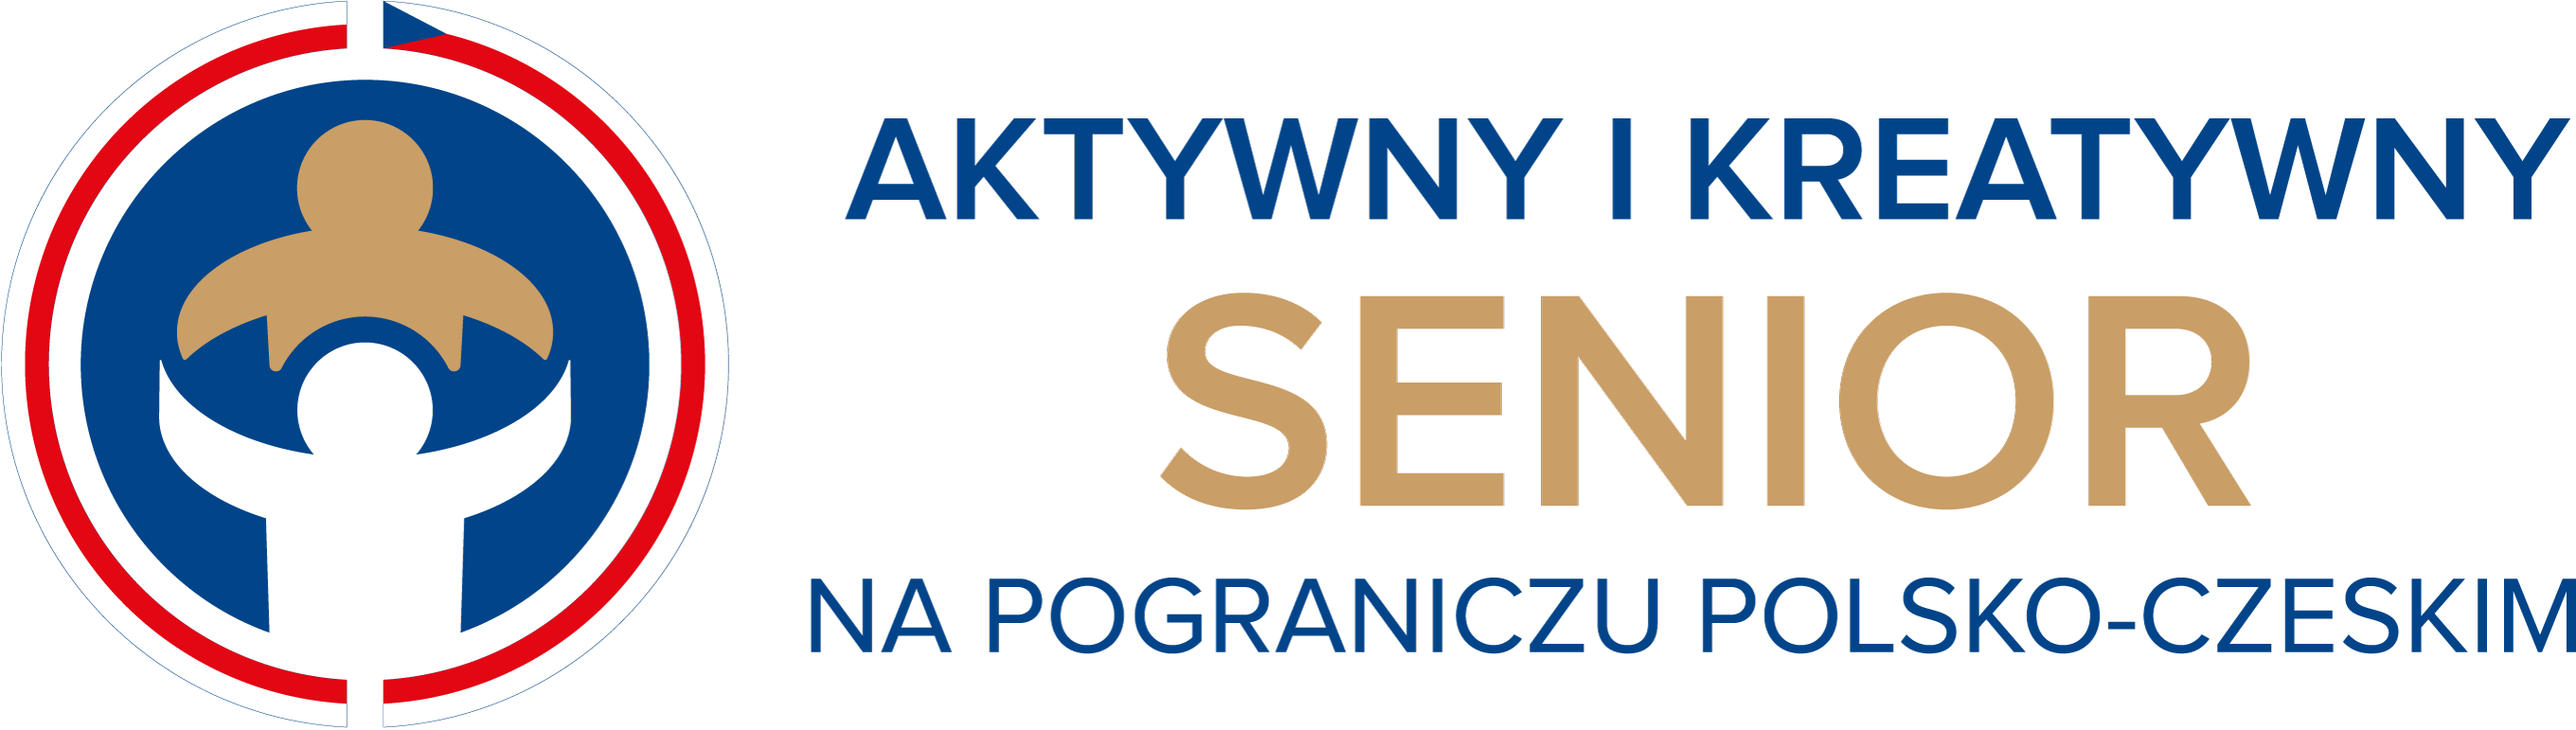 Aktywny senior logotyp